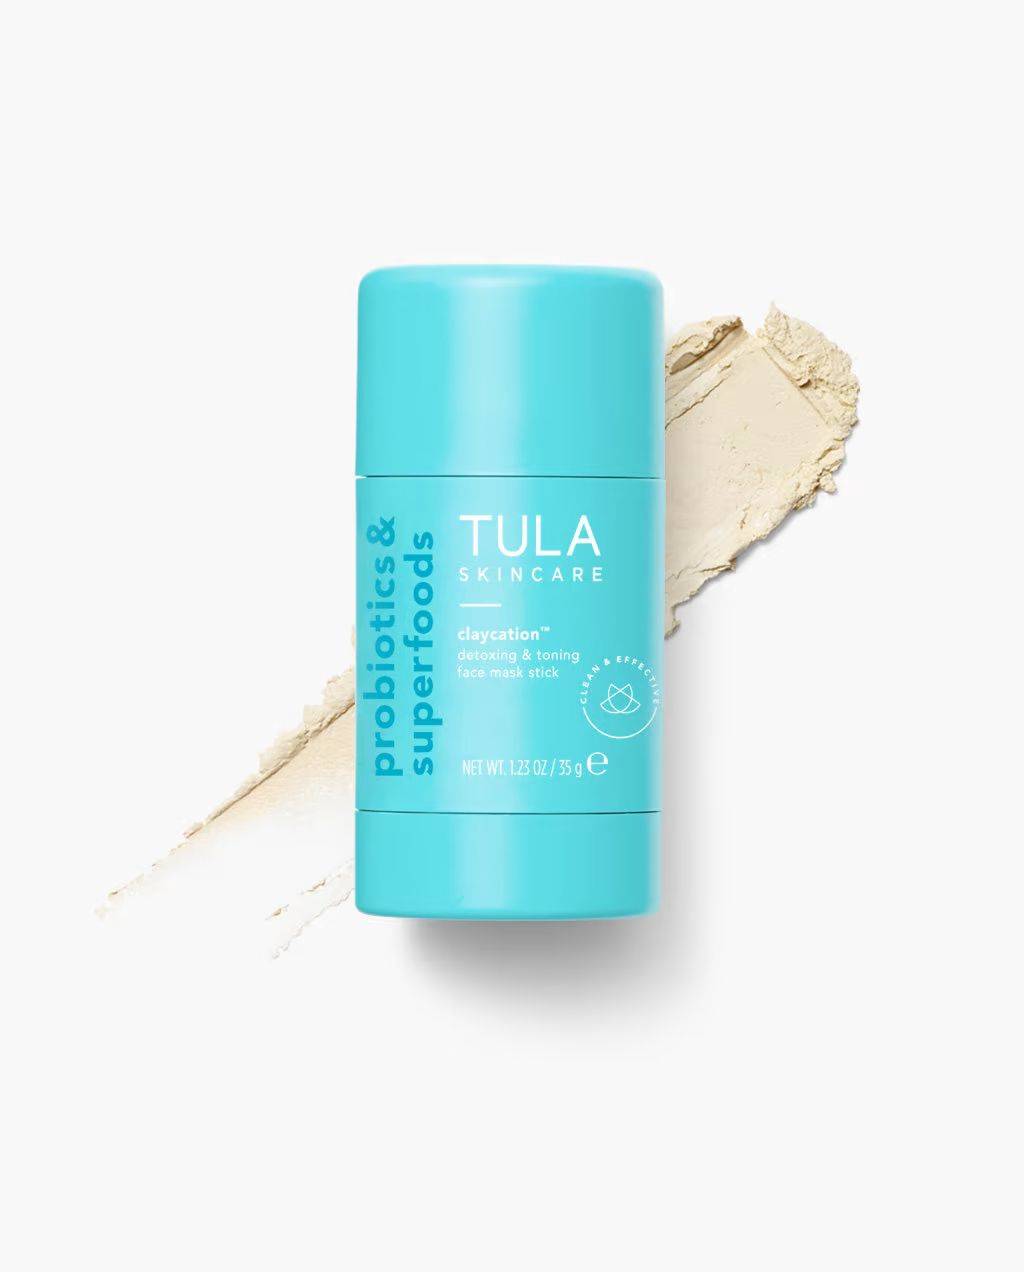 detoxing & toning face mask stick | Tula Skincare